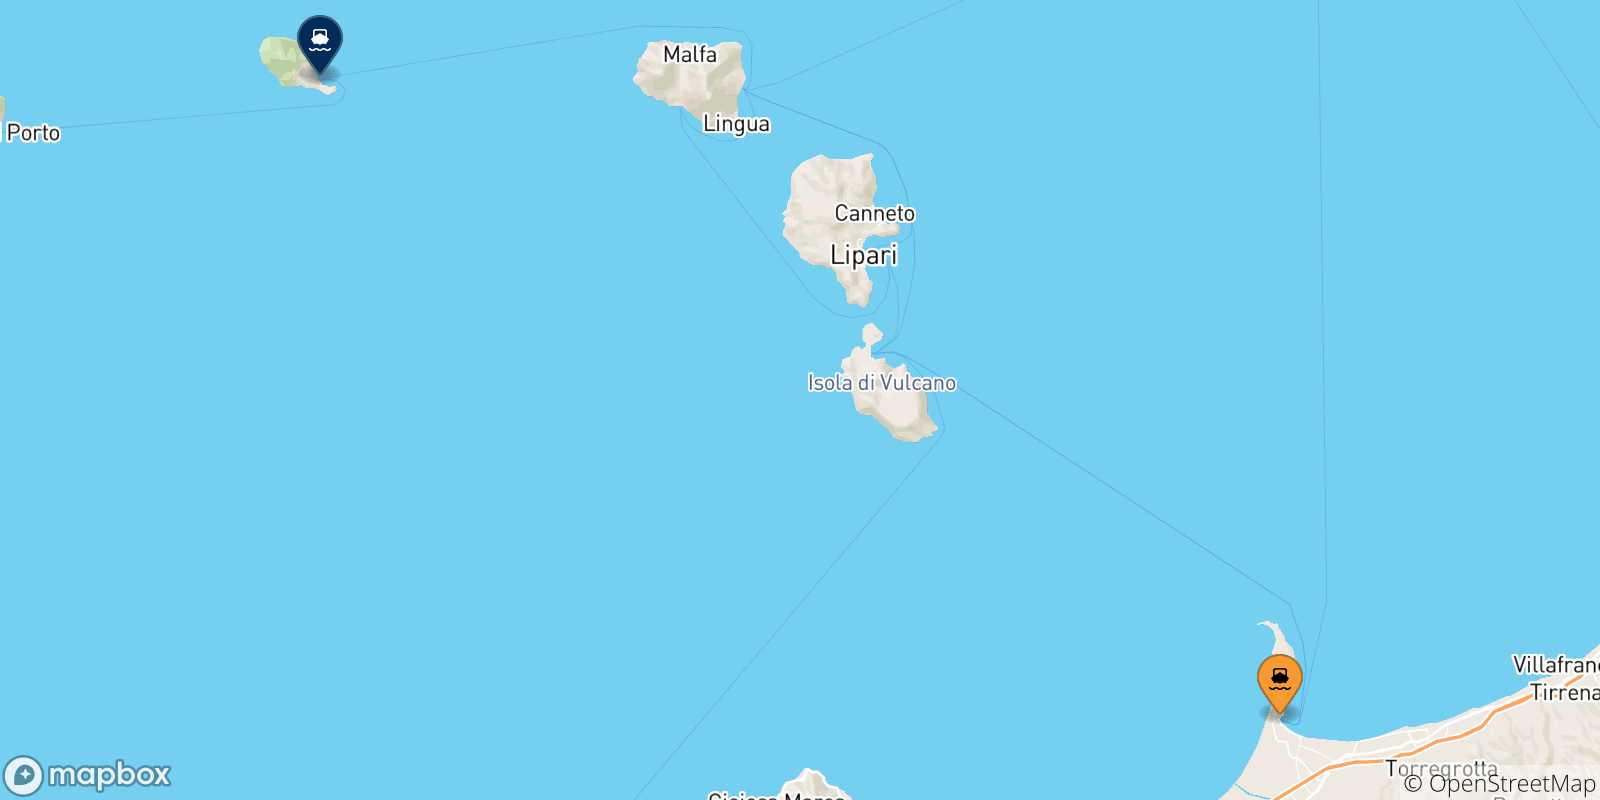 Mapa de las posibles rutas entre Sicilia y  Filicudi